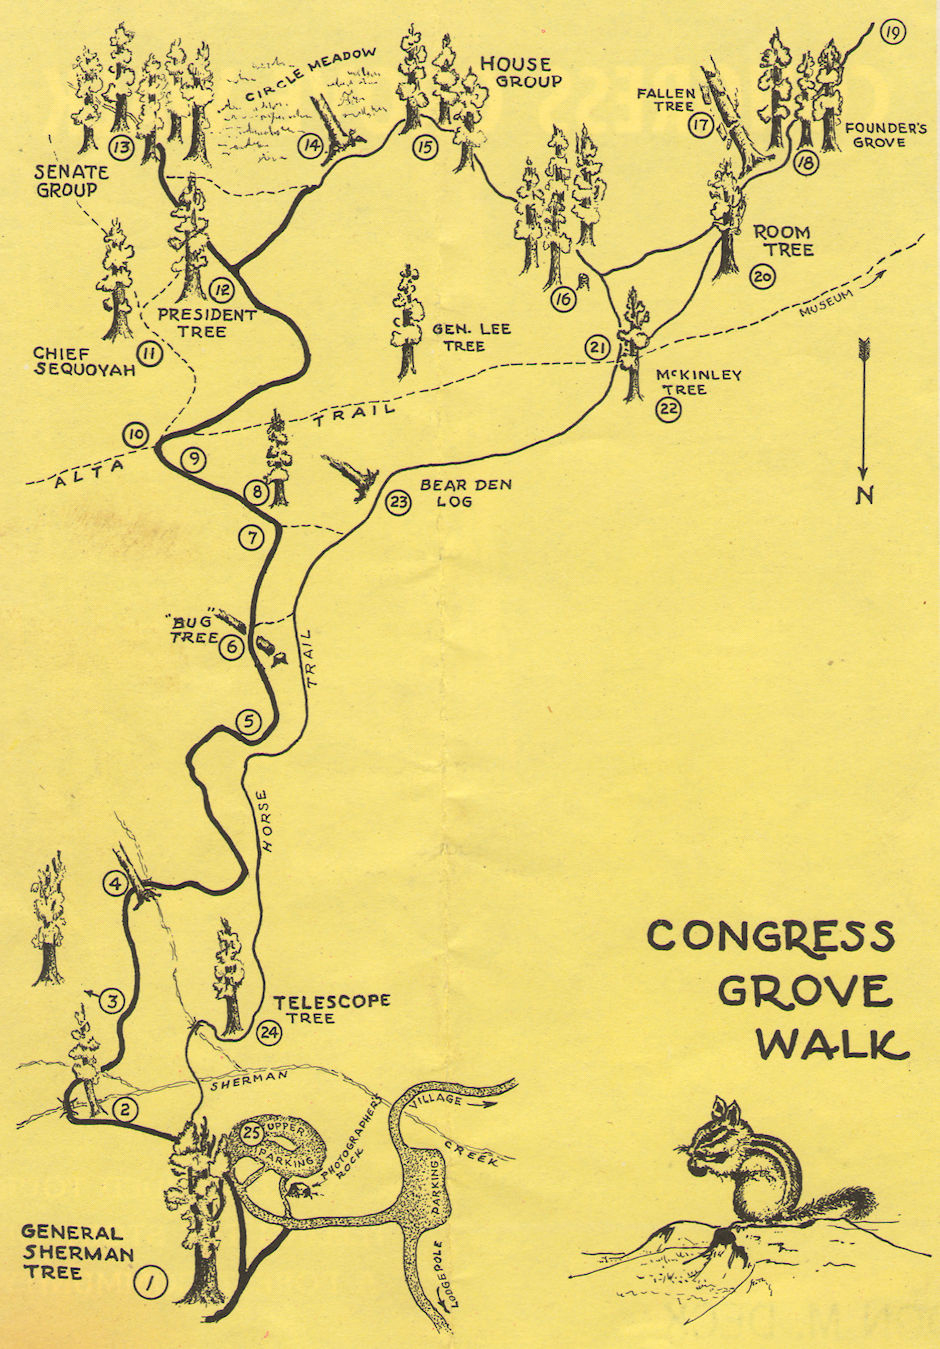 Congress Grove Walk map - Sequoia National Park 15-17 Jul 1957